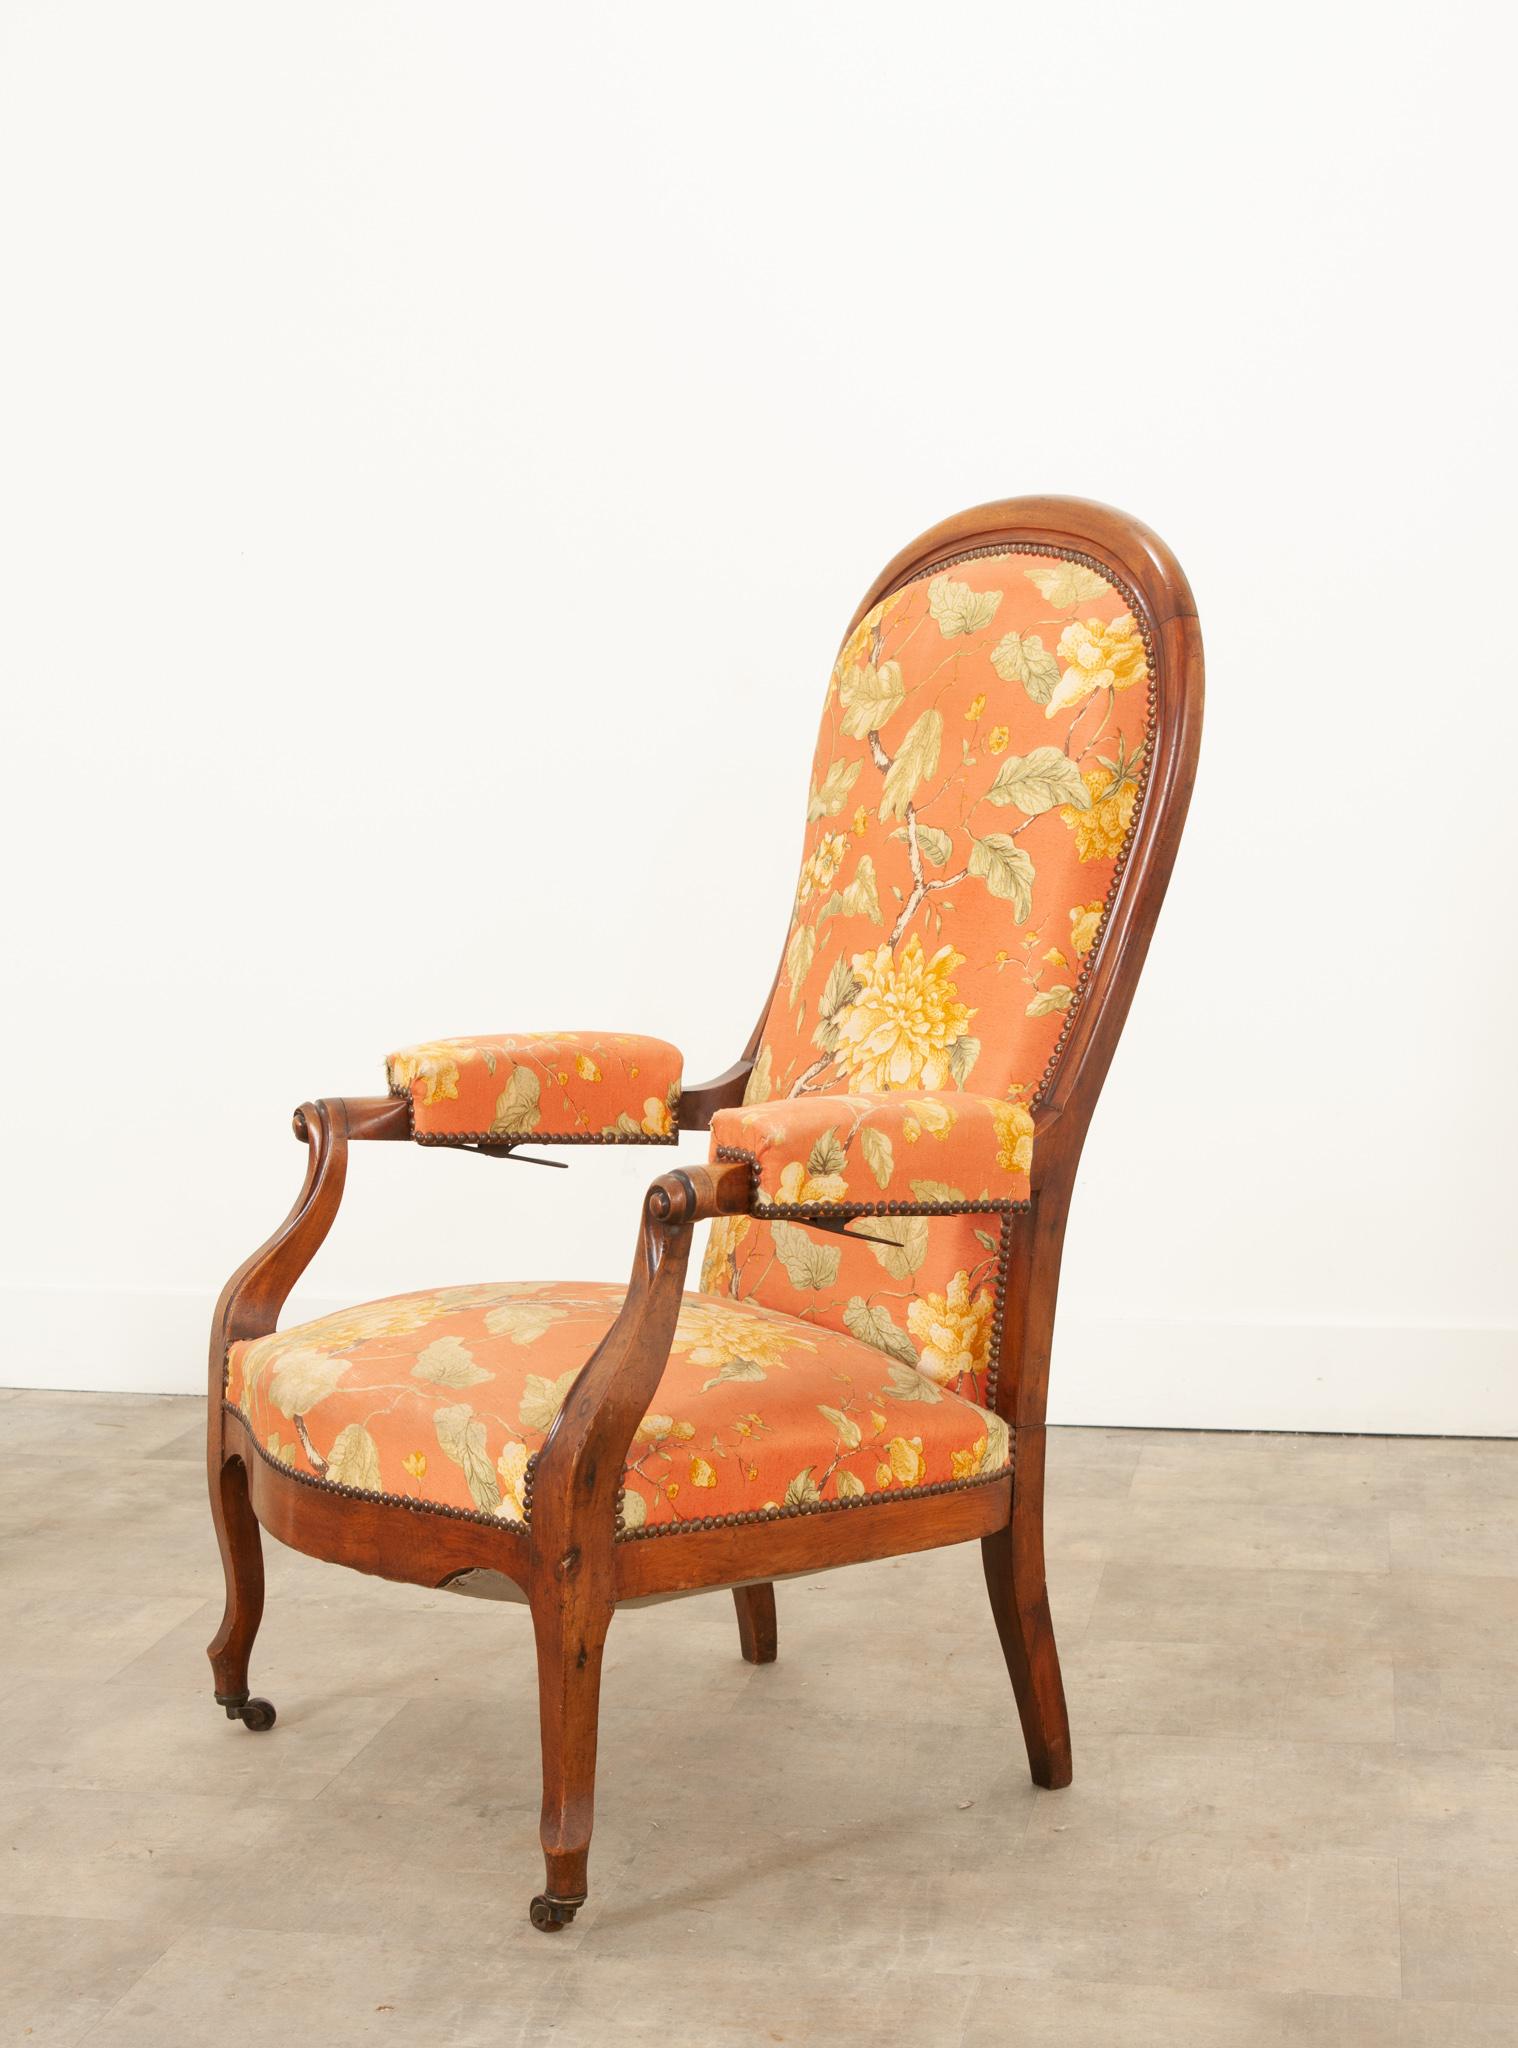 Rare fauteuil à haut dossier inclinable en acajou anglais du XIXe siècle, avec tapisserie florale et mécanisme d'inclinaison en métal sous l'accoudoir. Un joli fauteuil inclinable victorien qui est à la fois à la mode et exceptionnellement